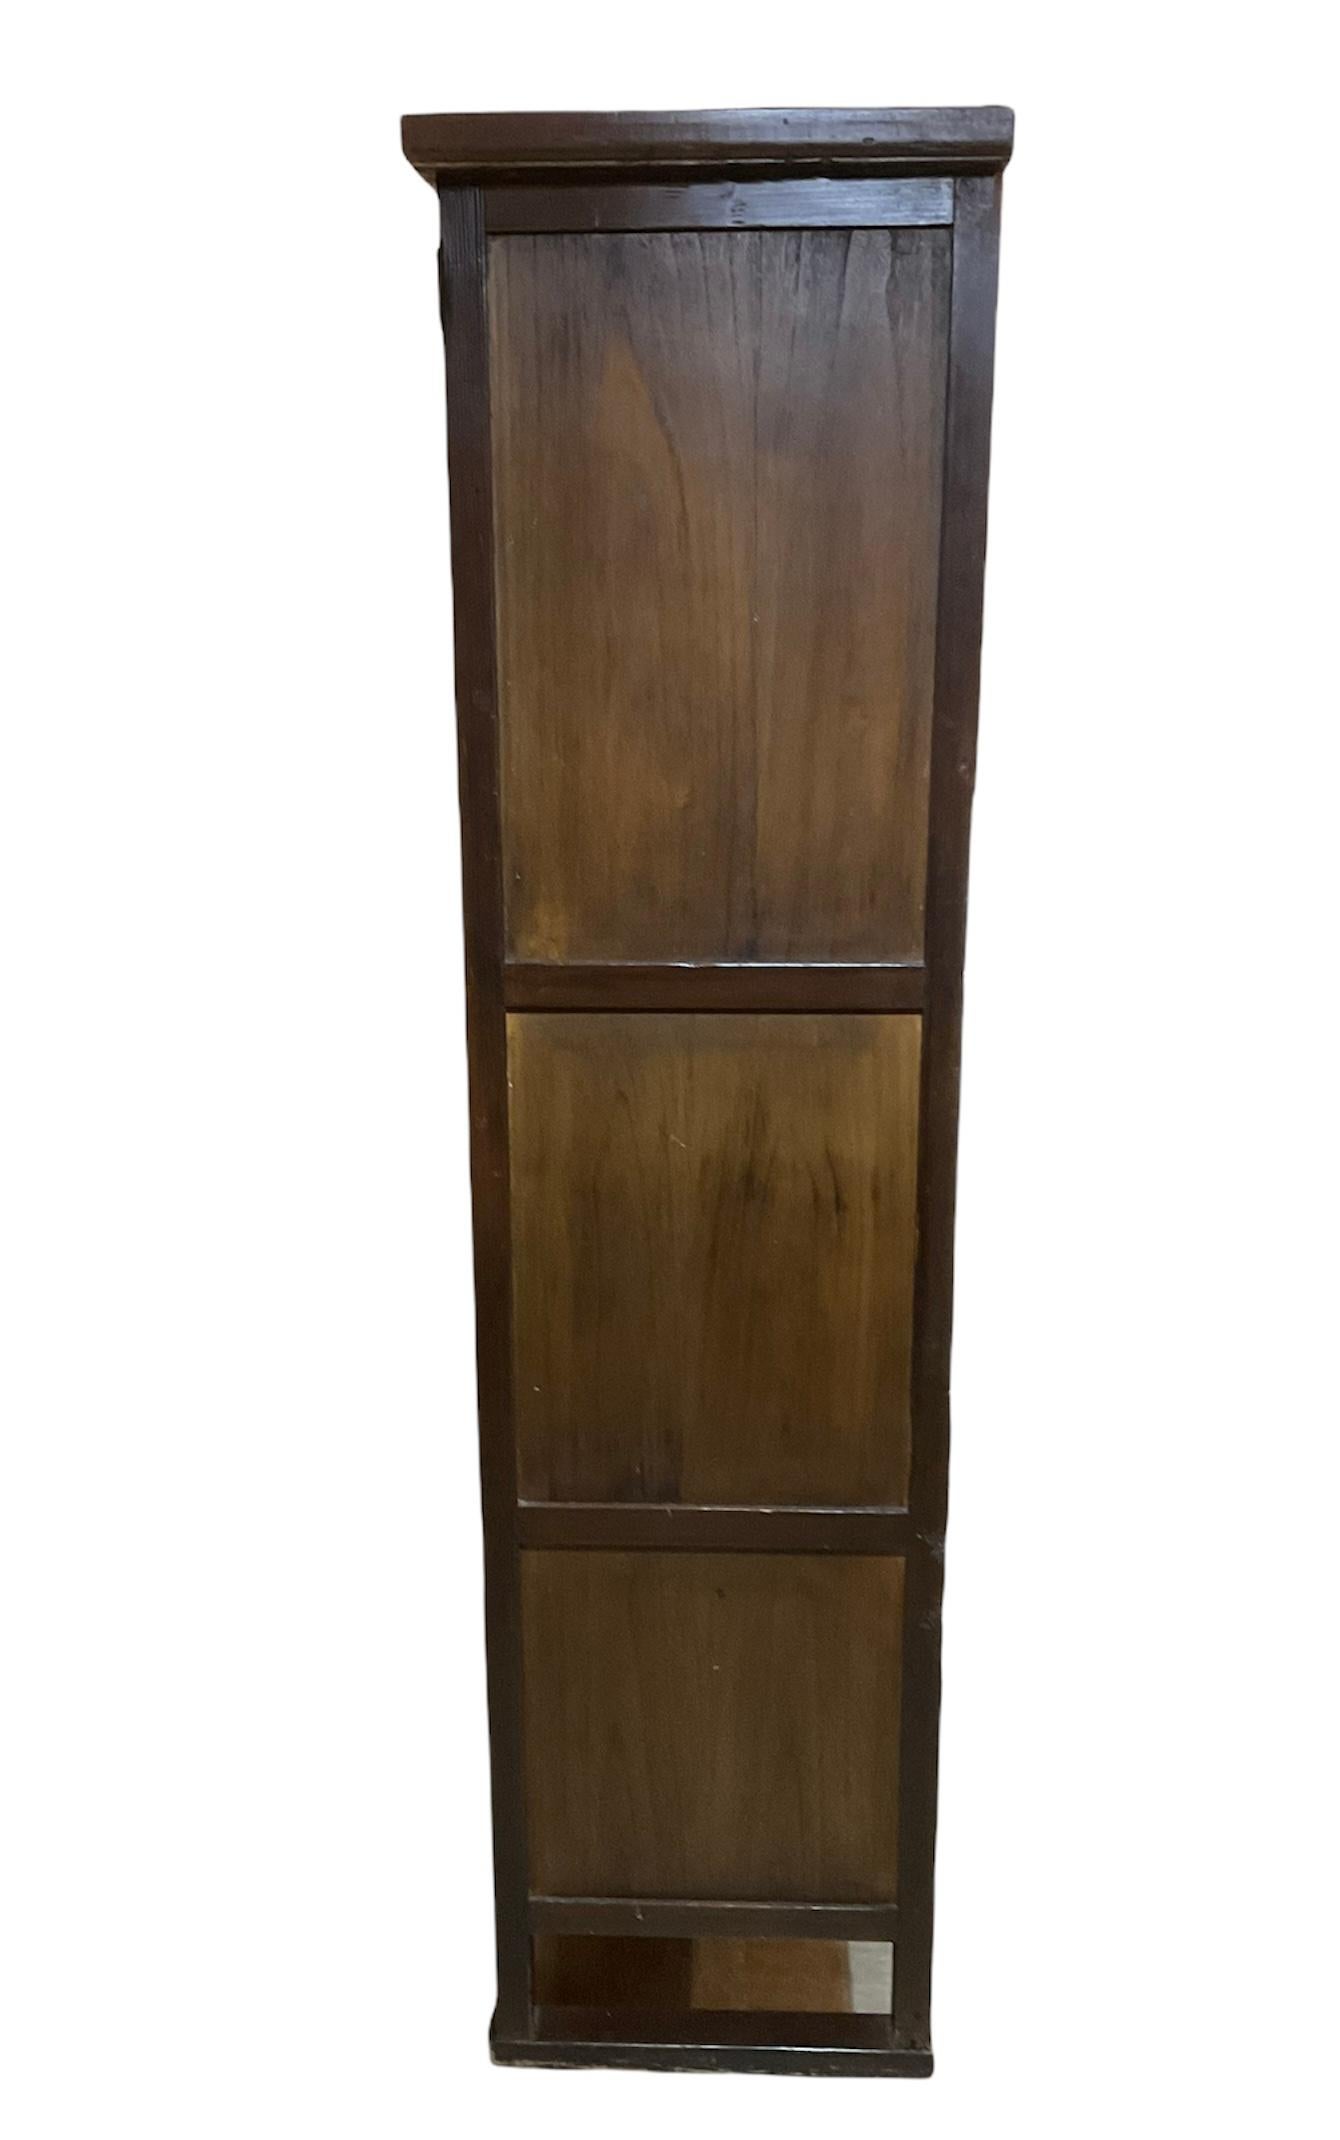 Il s'agit d'une grande armoire/coffre en bois coréenne. Le meuble comporte deux tiroirs en haut avec des poignées en fer en forme de C et en bas, il y a 3 compartiments. Ils vont du plus grand au plus petit. Chacune d'entre elles possède des portes